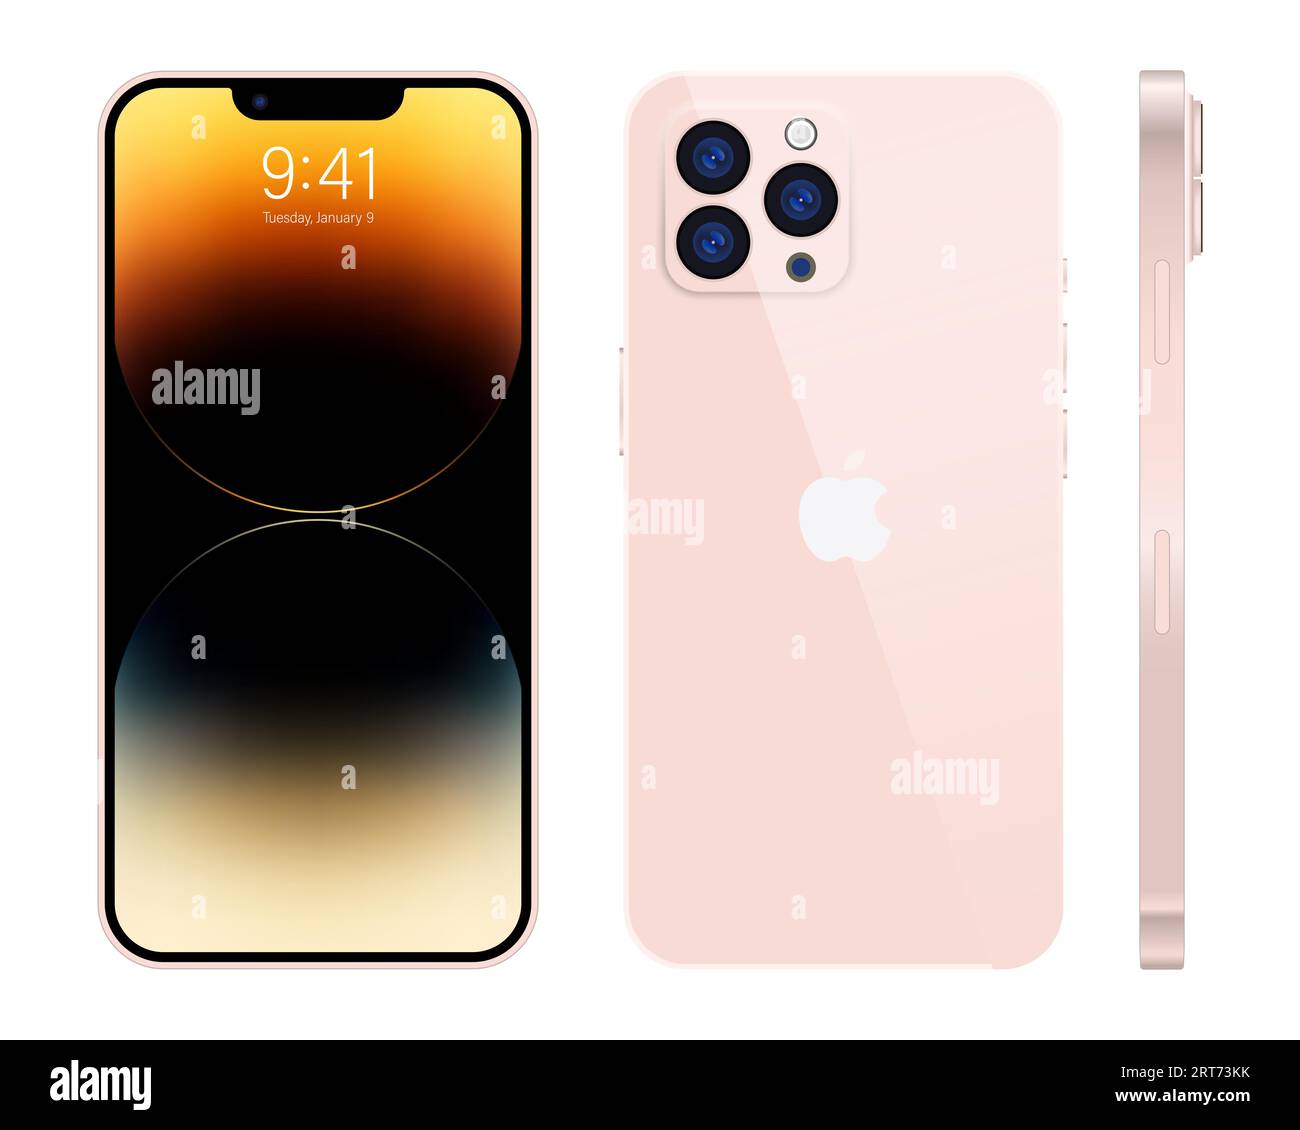 Nuevo iPhone 15 pro, pro max color rosa profundo por Apple Inc. Pantalla de  maqueta iphone y iphone de la parte posterior. Alta calidad. Editorial  Imagen Vector de stock - Alamy